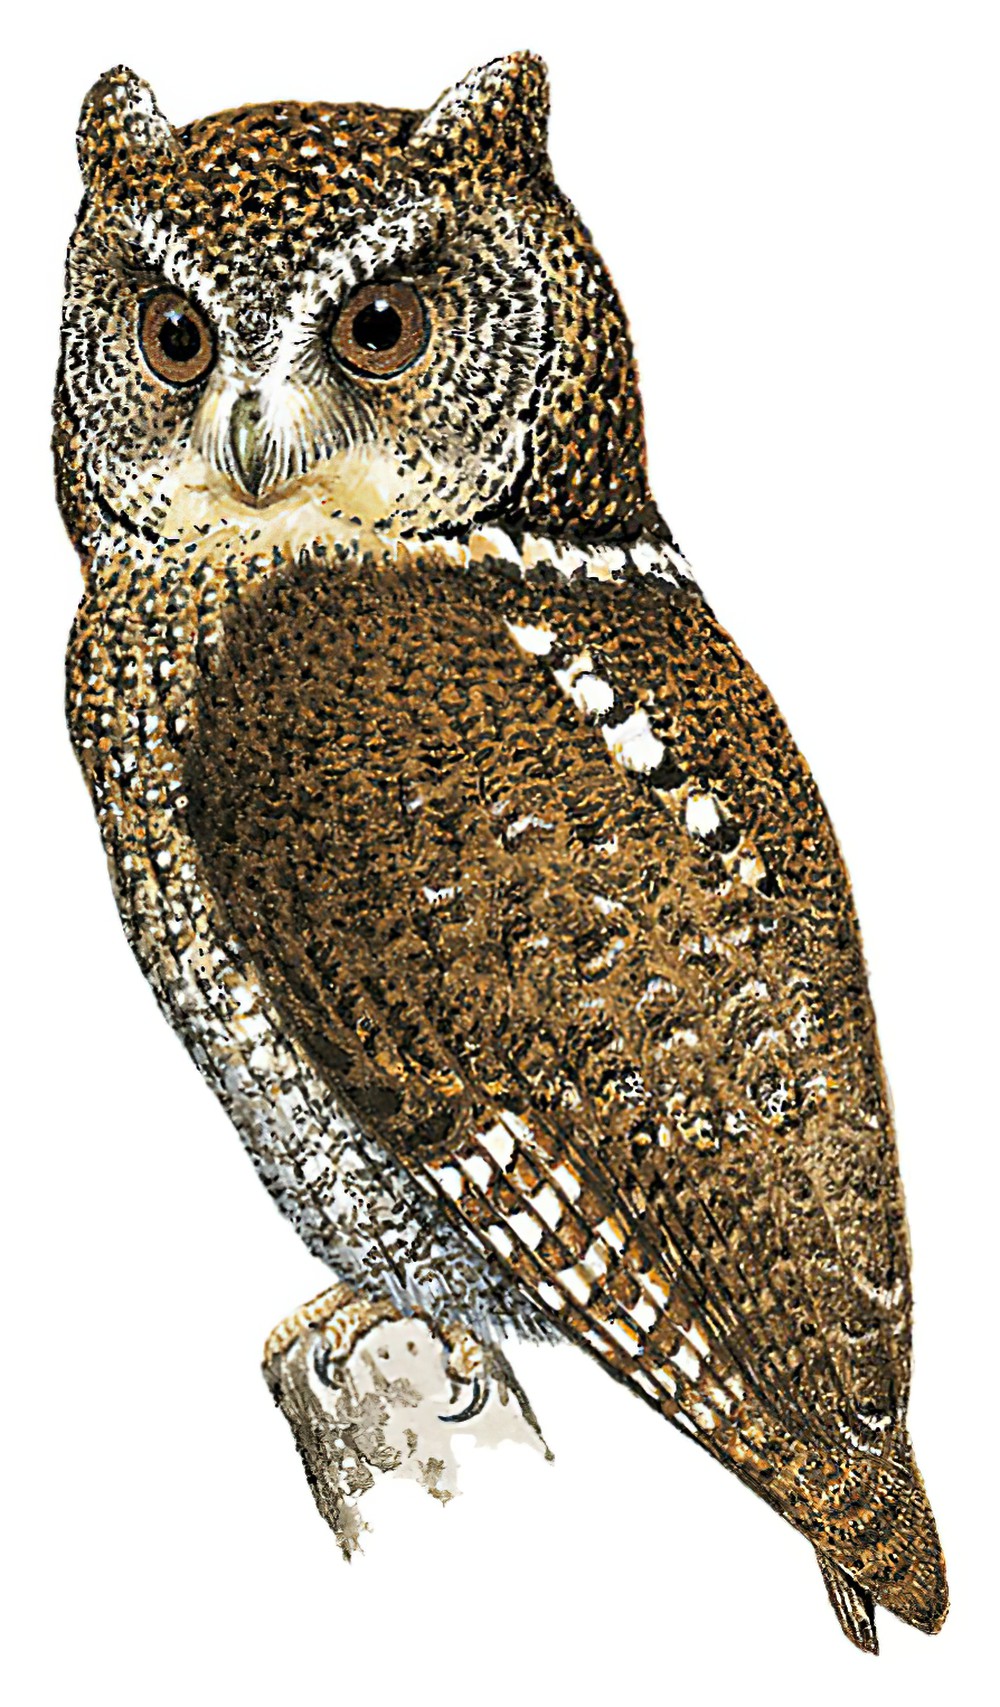 棉兰角鸮 / Mindanao Scops Owl / Otus mirus